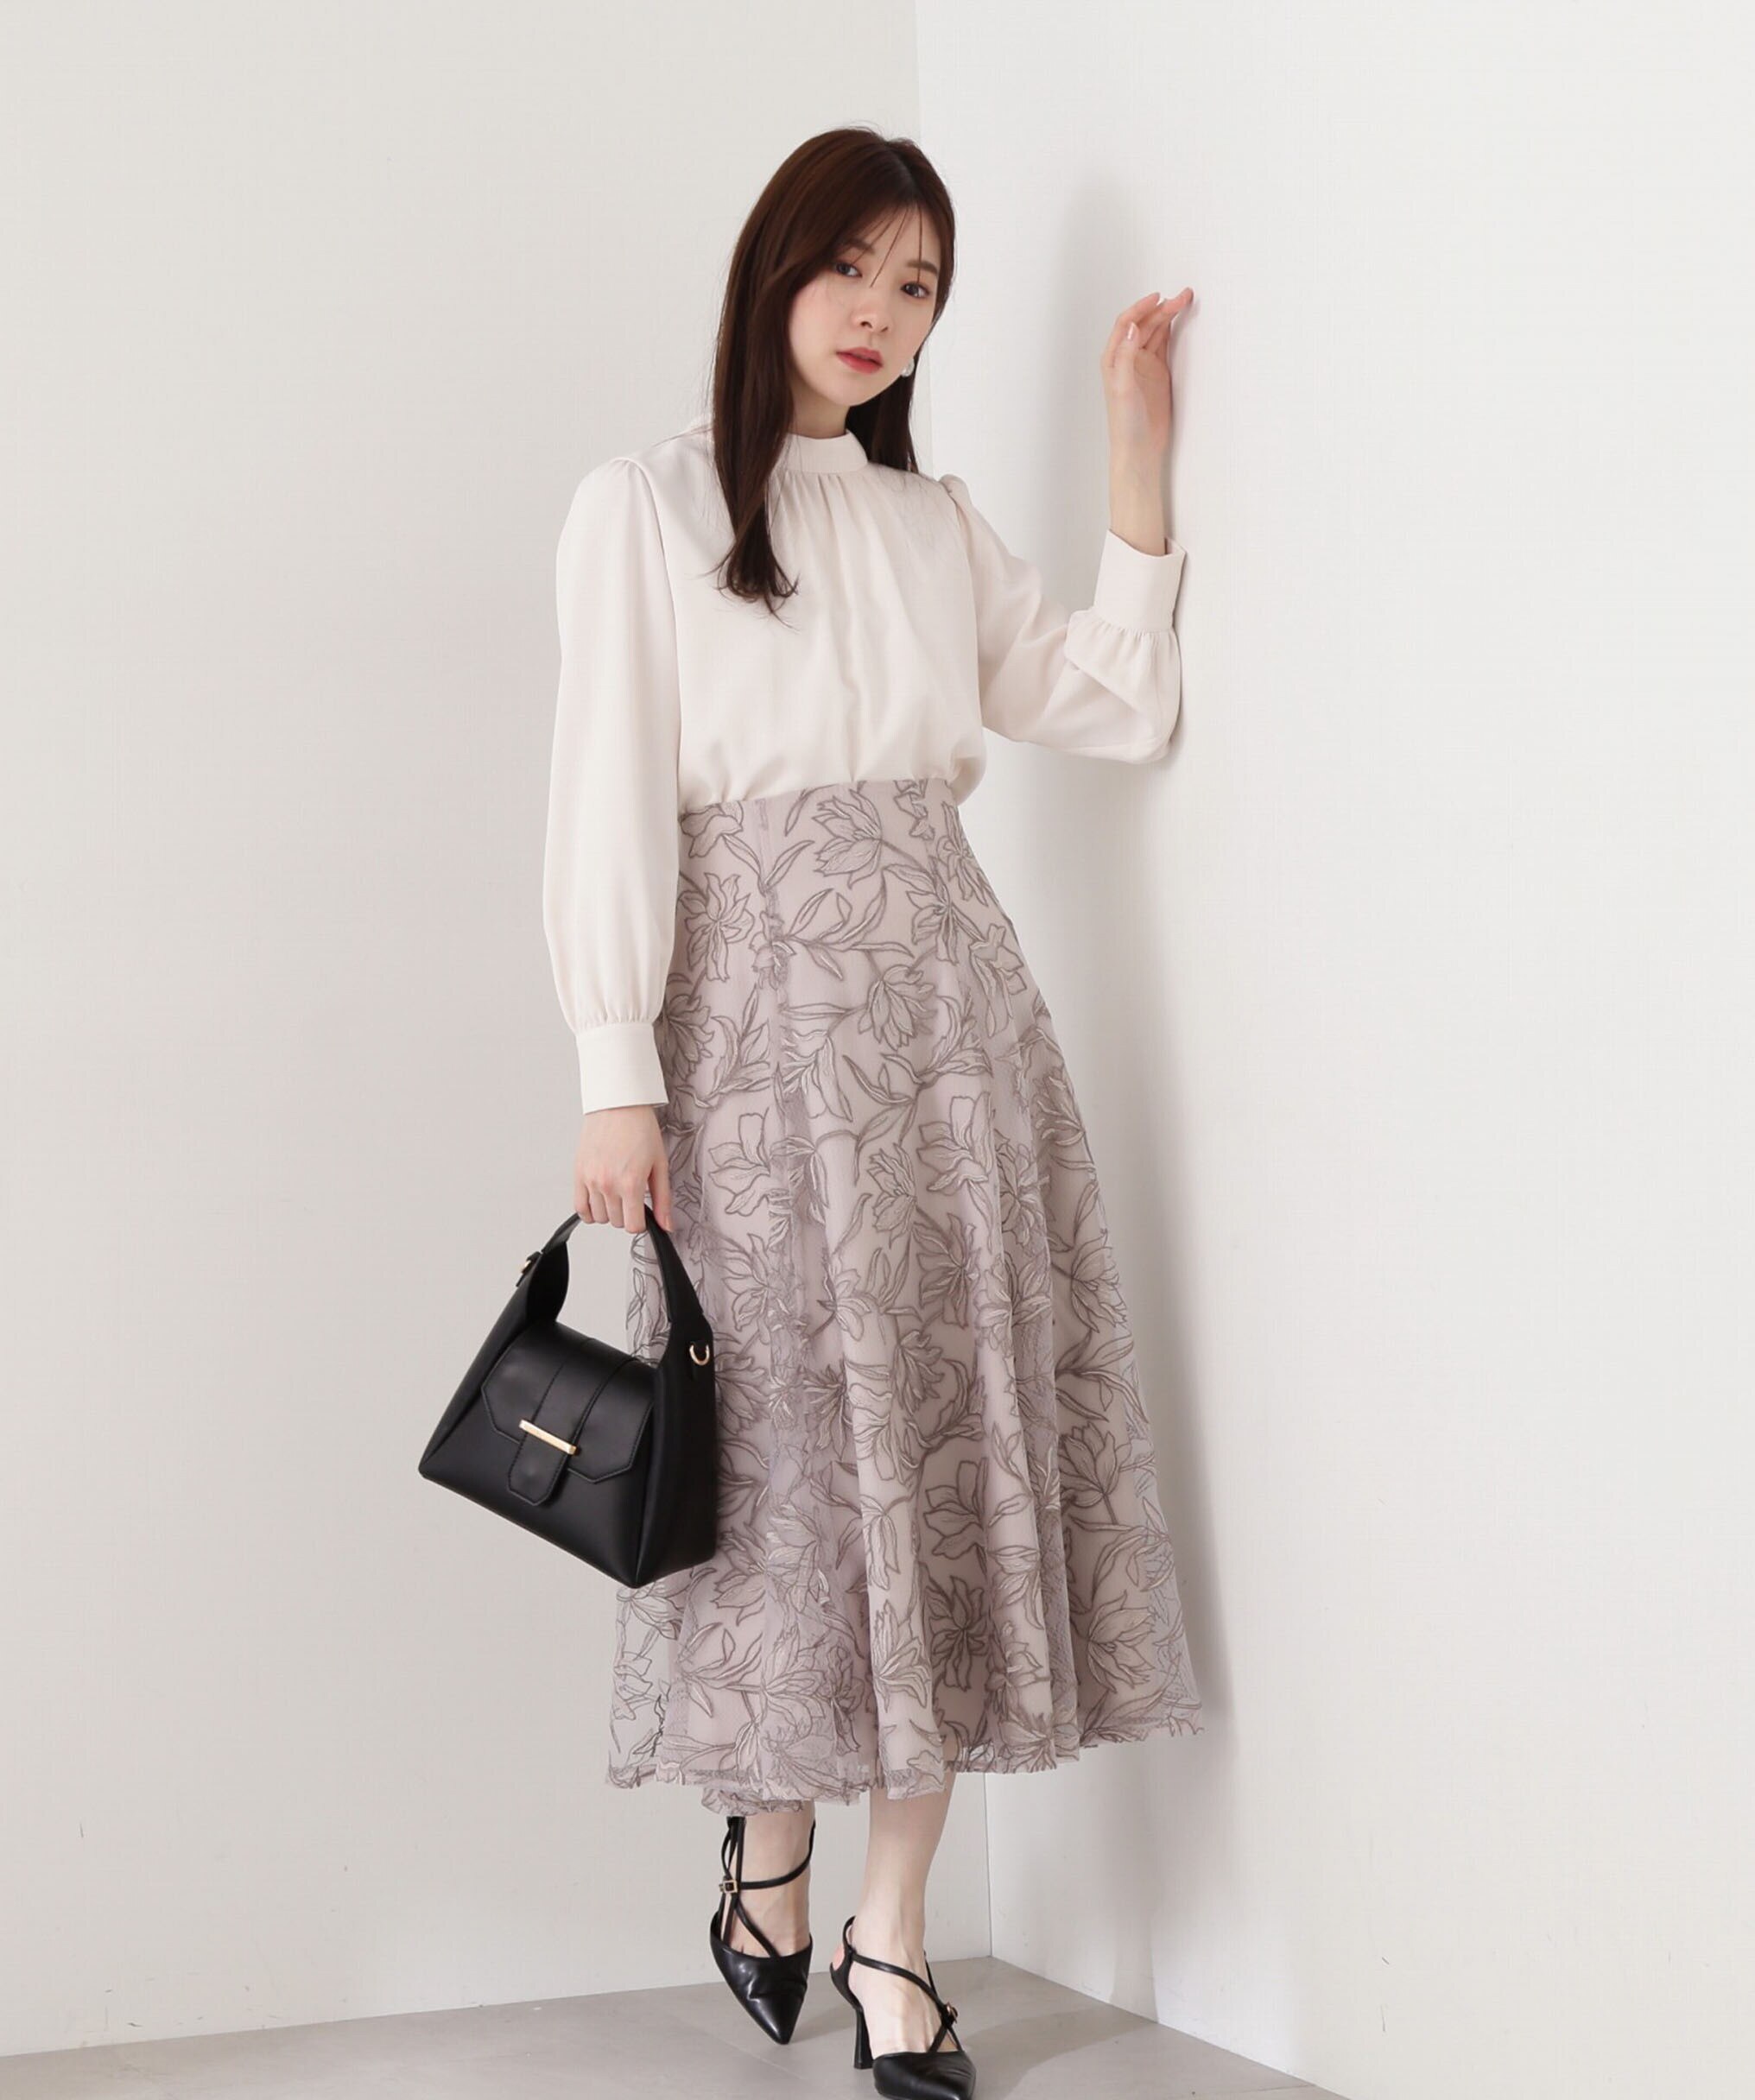 フラワーオーガン刺繍スカート|PROPORTION BODY DRESSING 